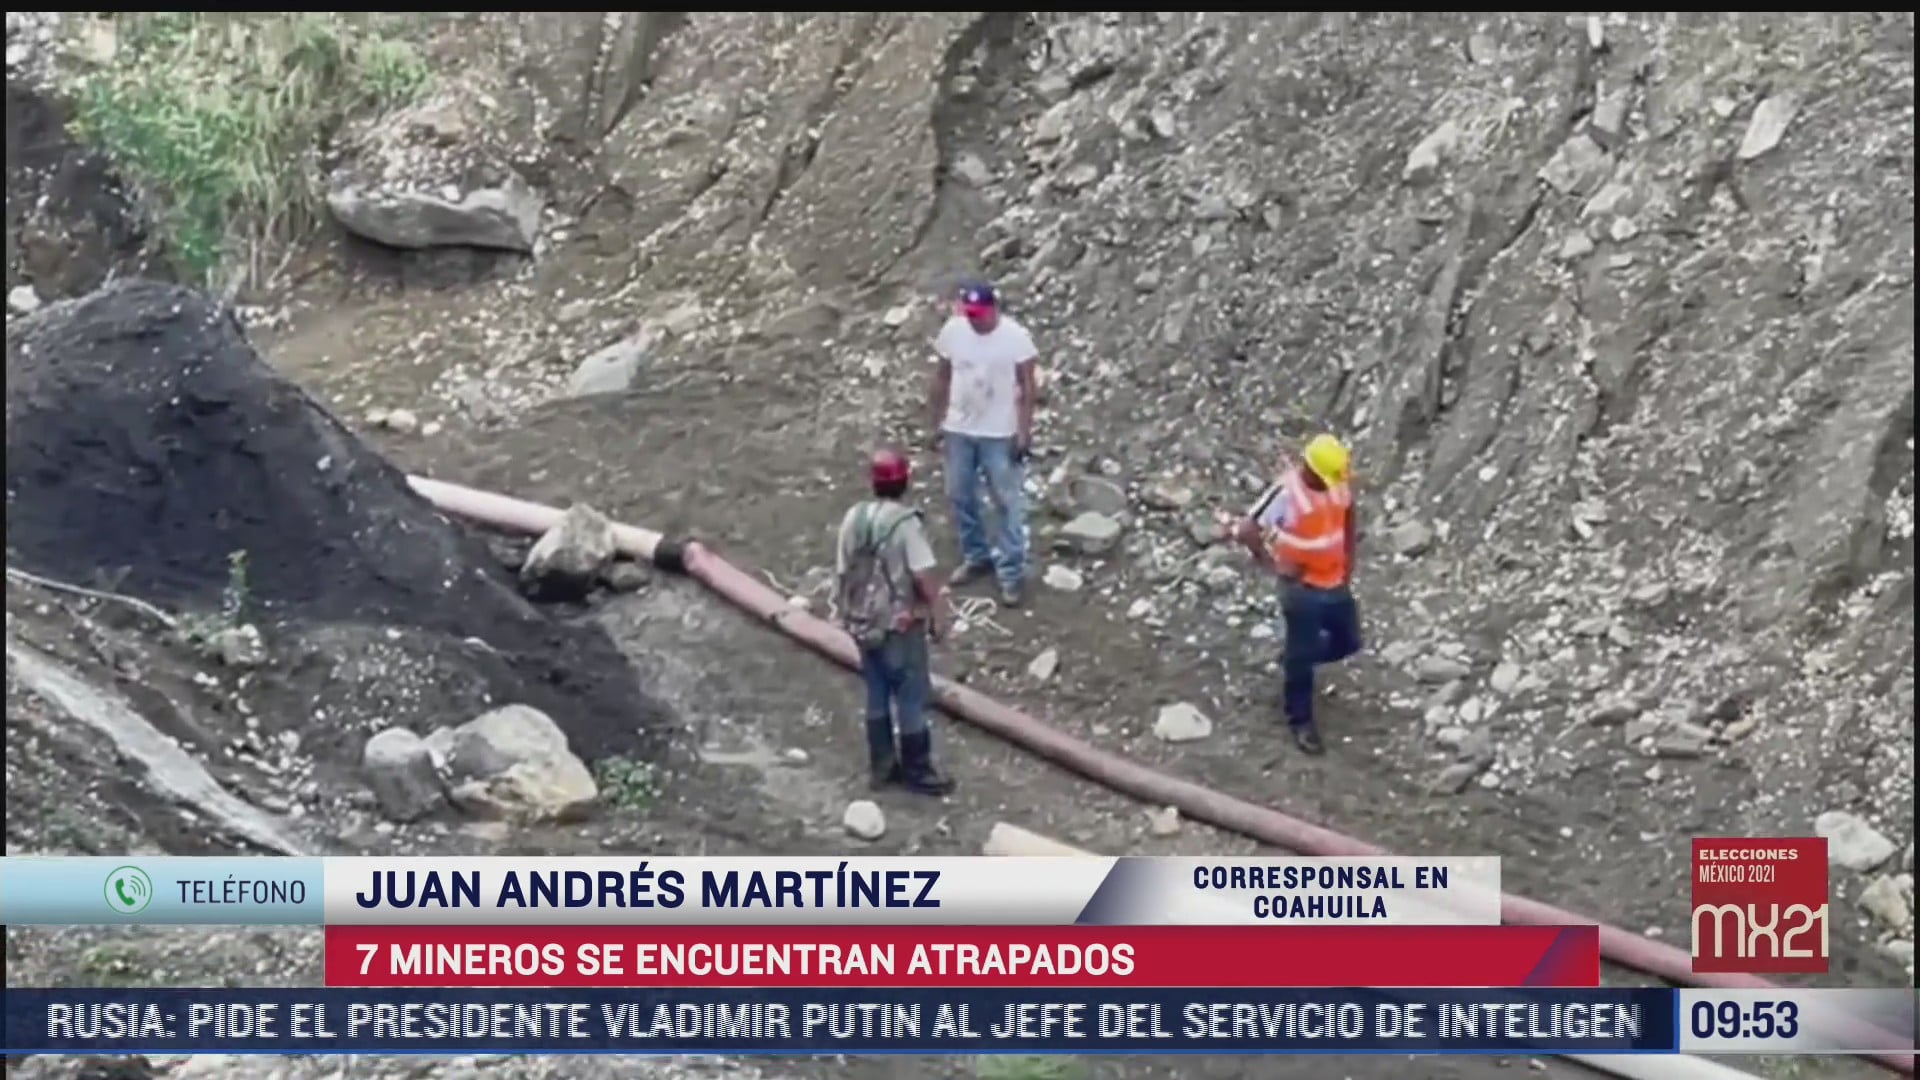 reportan tres mineros fallecidos de los siete atrapados en coahuila